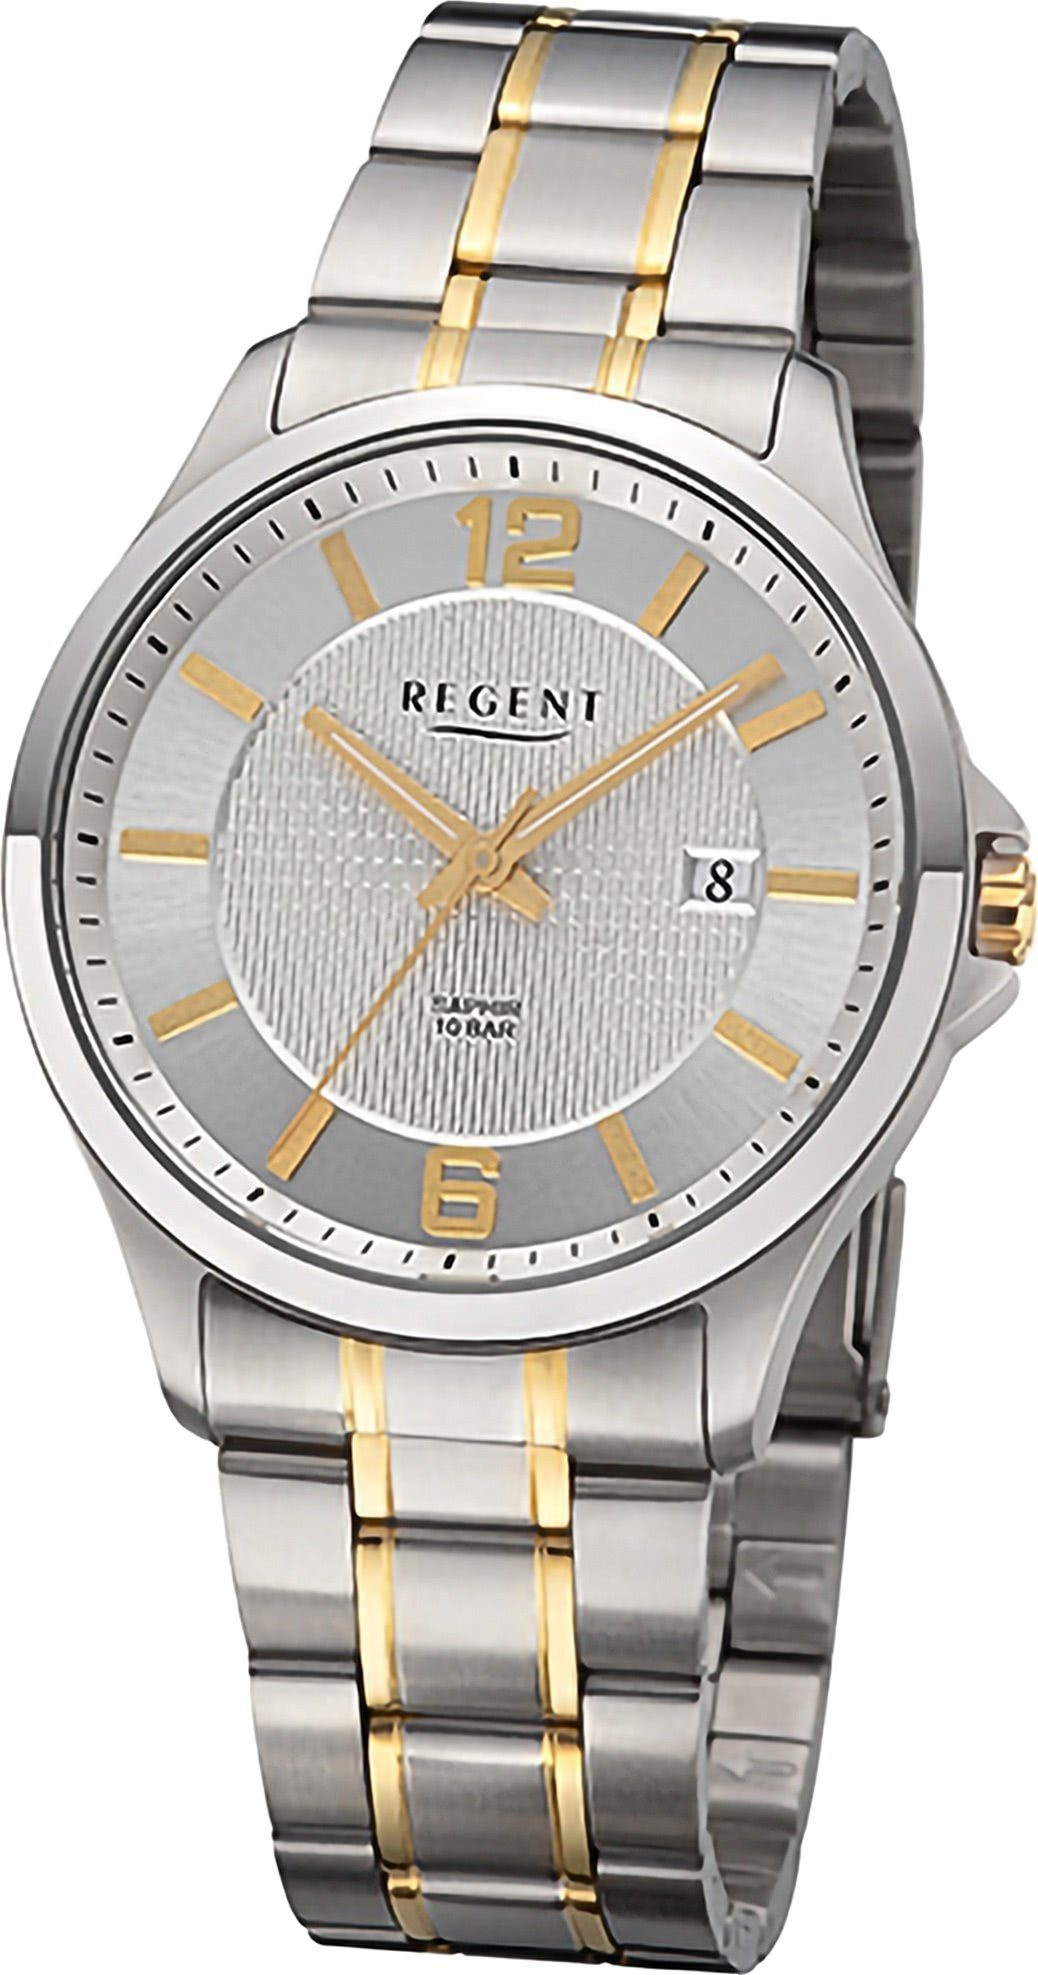 Regent Quarzuhr Regent Herren Armbanduhr Metallarmband groß rundes silber, gold, Analog, Gehäuse, Herrenuhr (ca. 39mm)